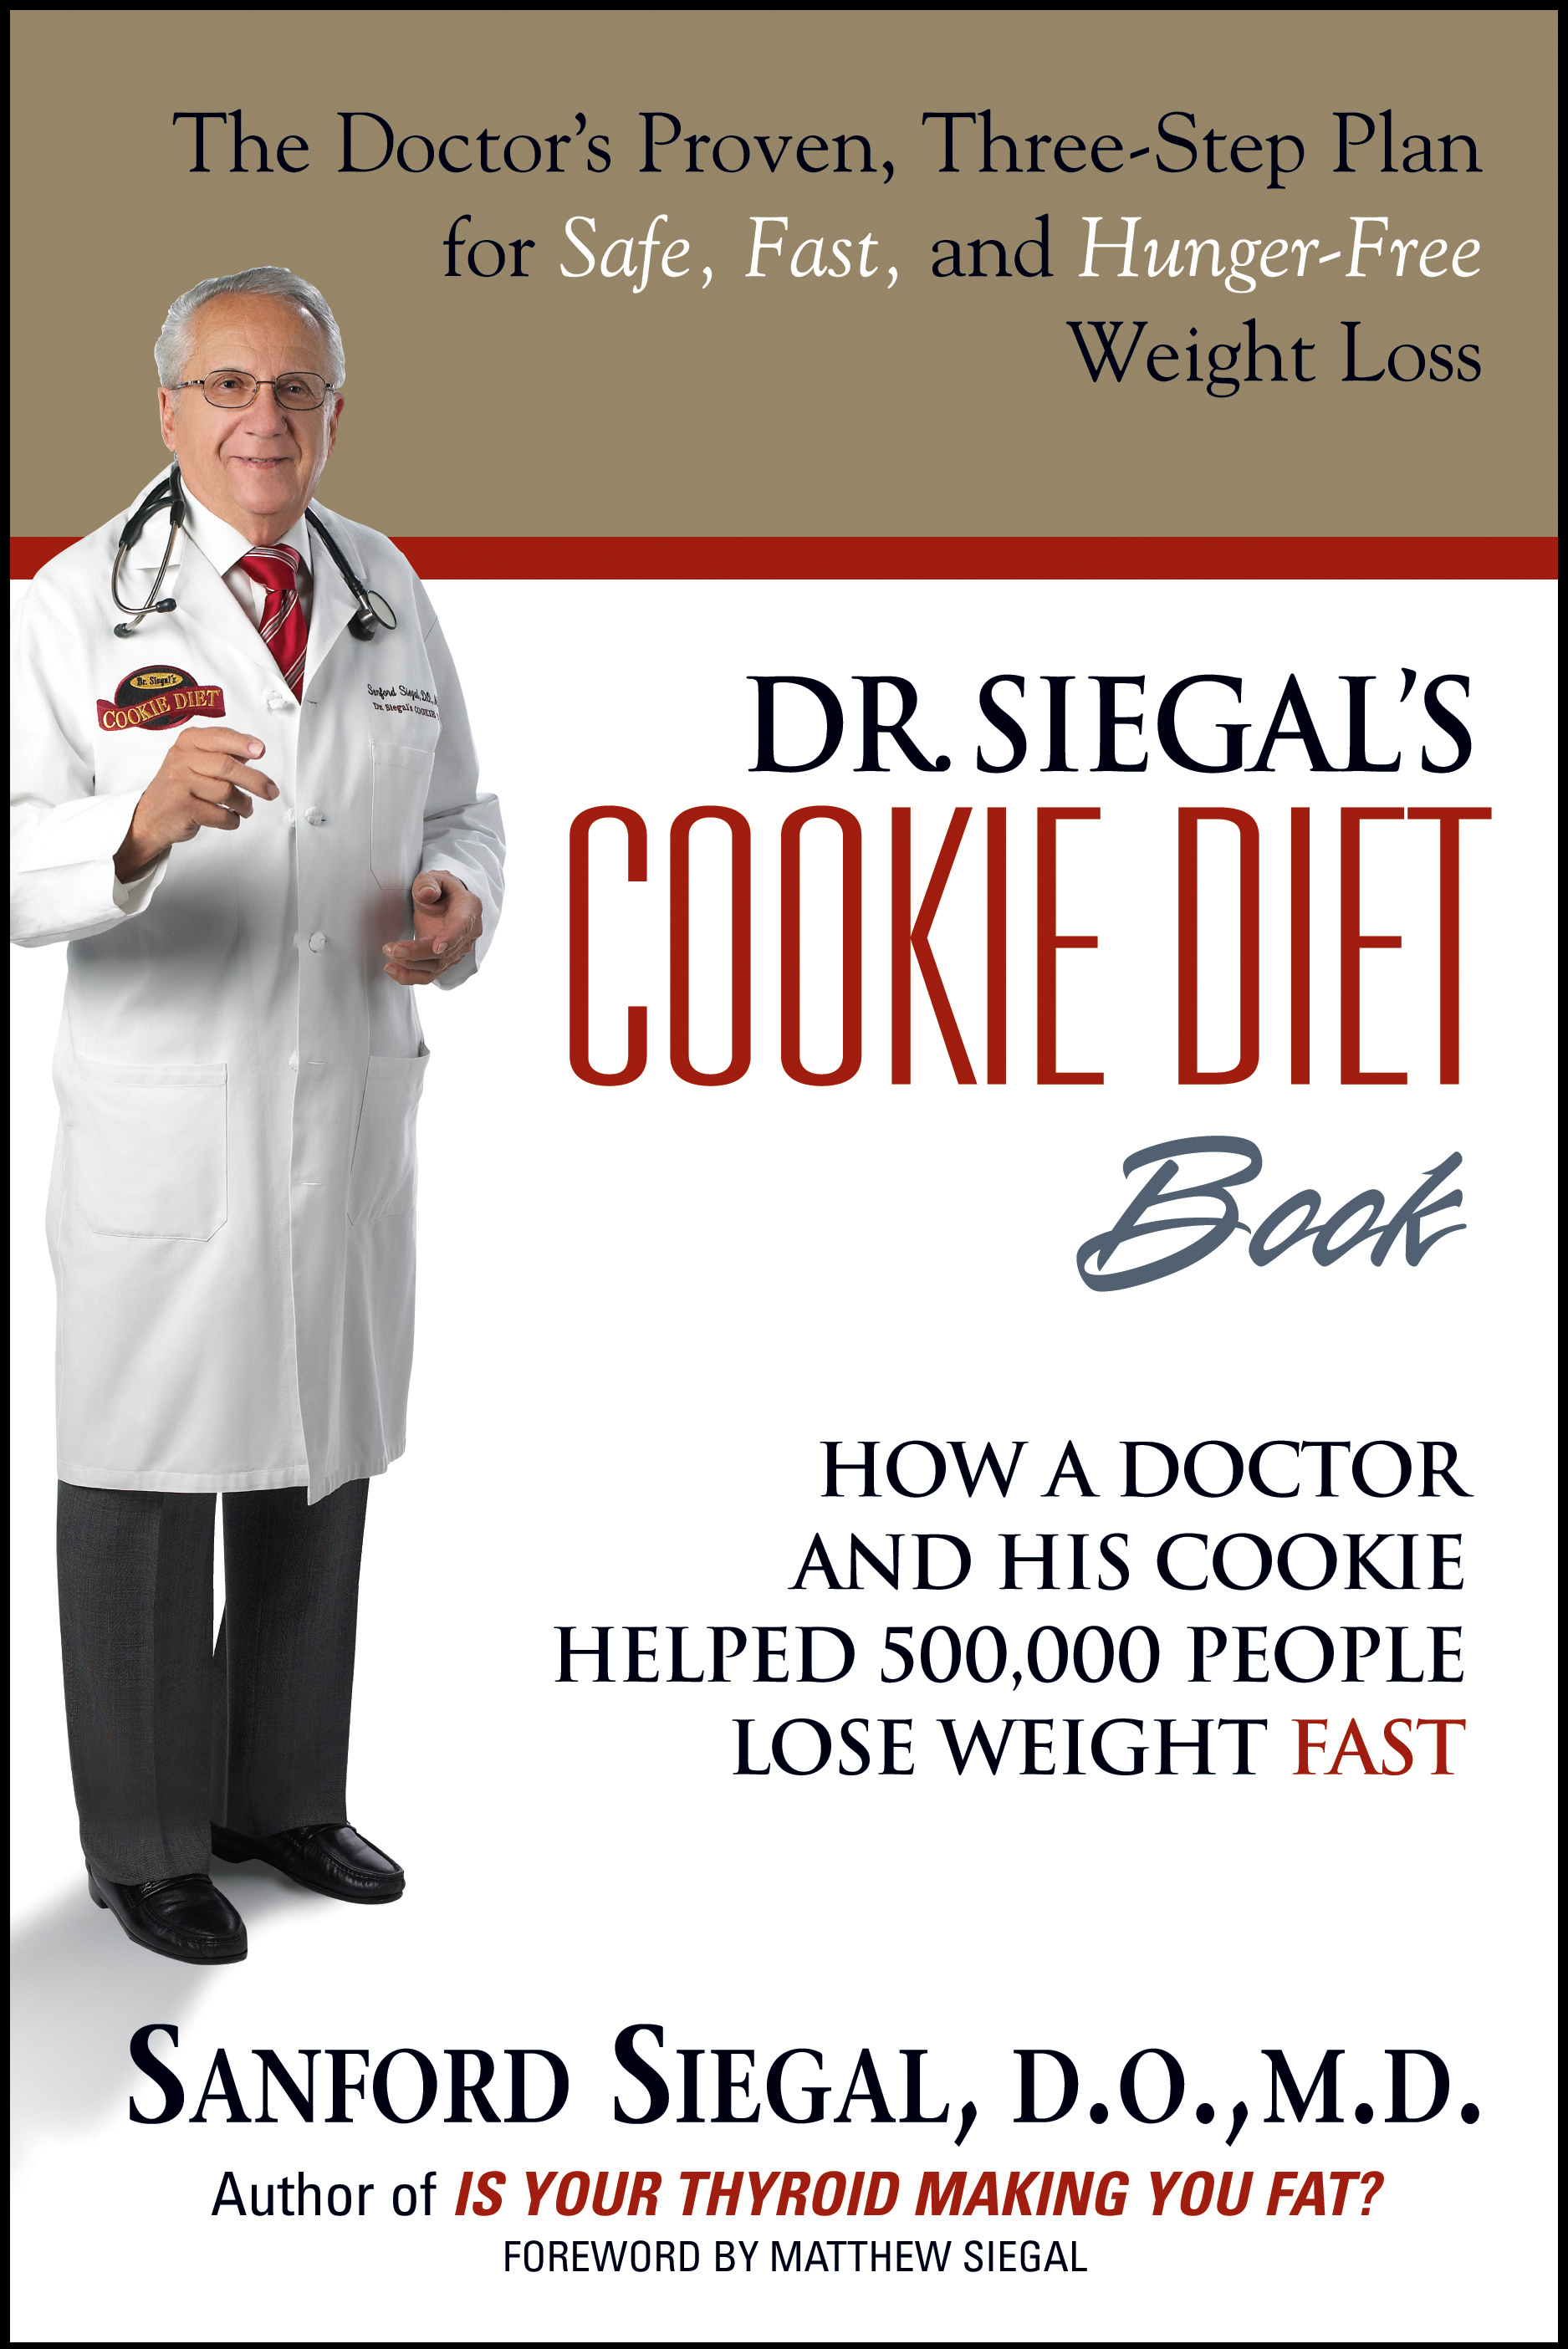 Dr. Siegal's Cookie Diet Book by Sanford Siegal, D.O., M.D ...